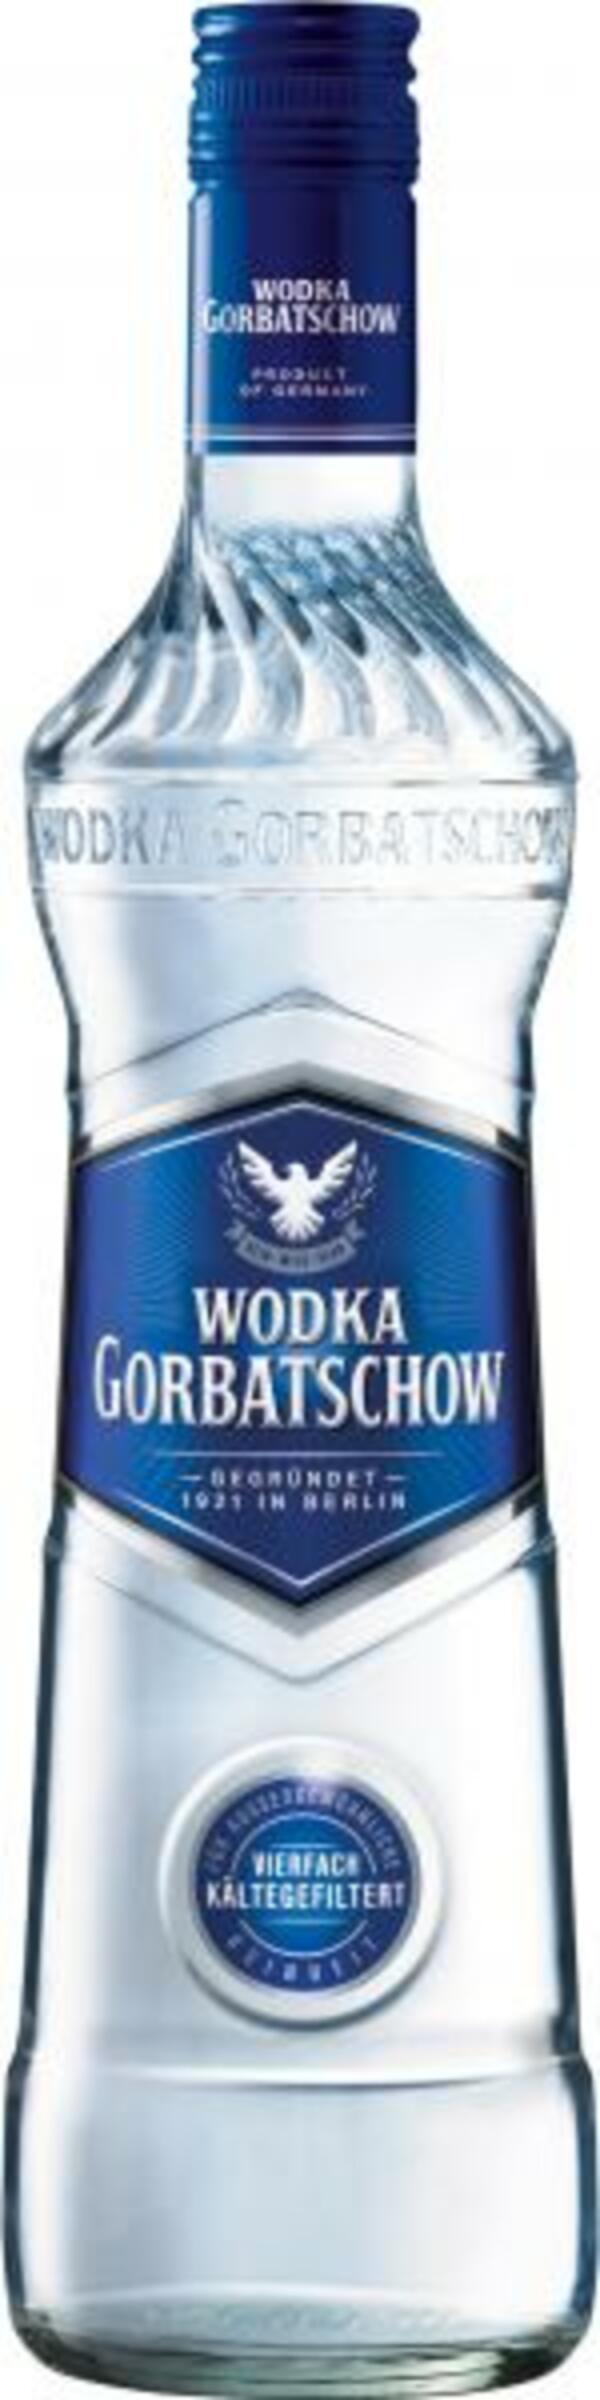 Bild 1 von Wodka Gorbatschow